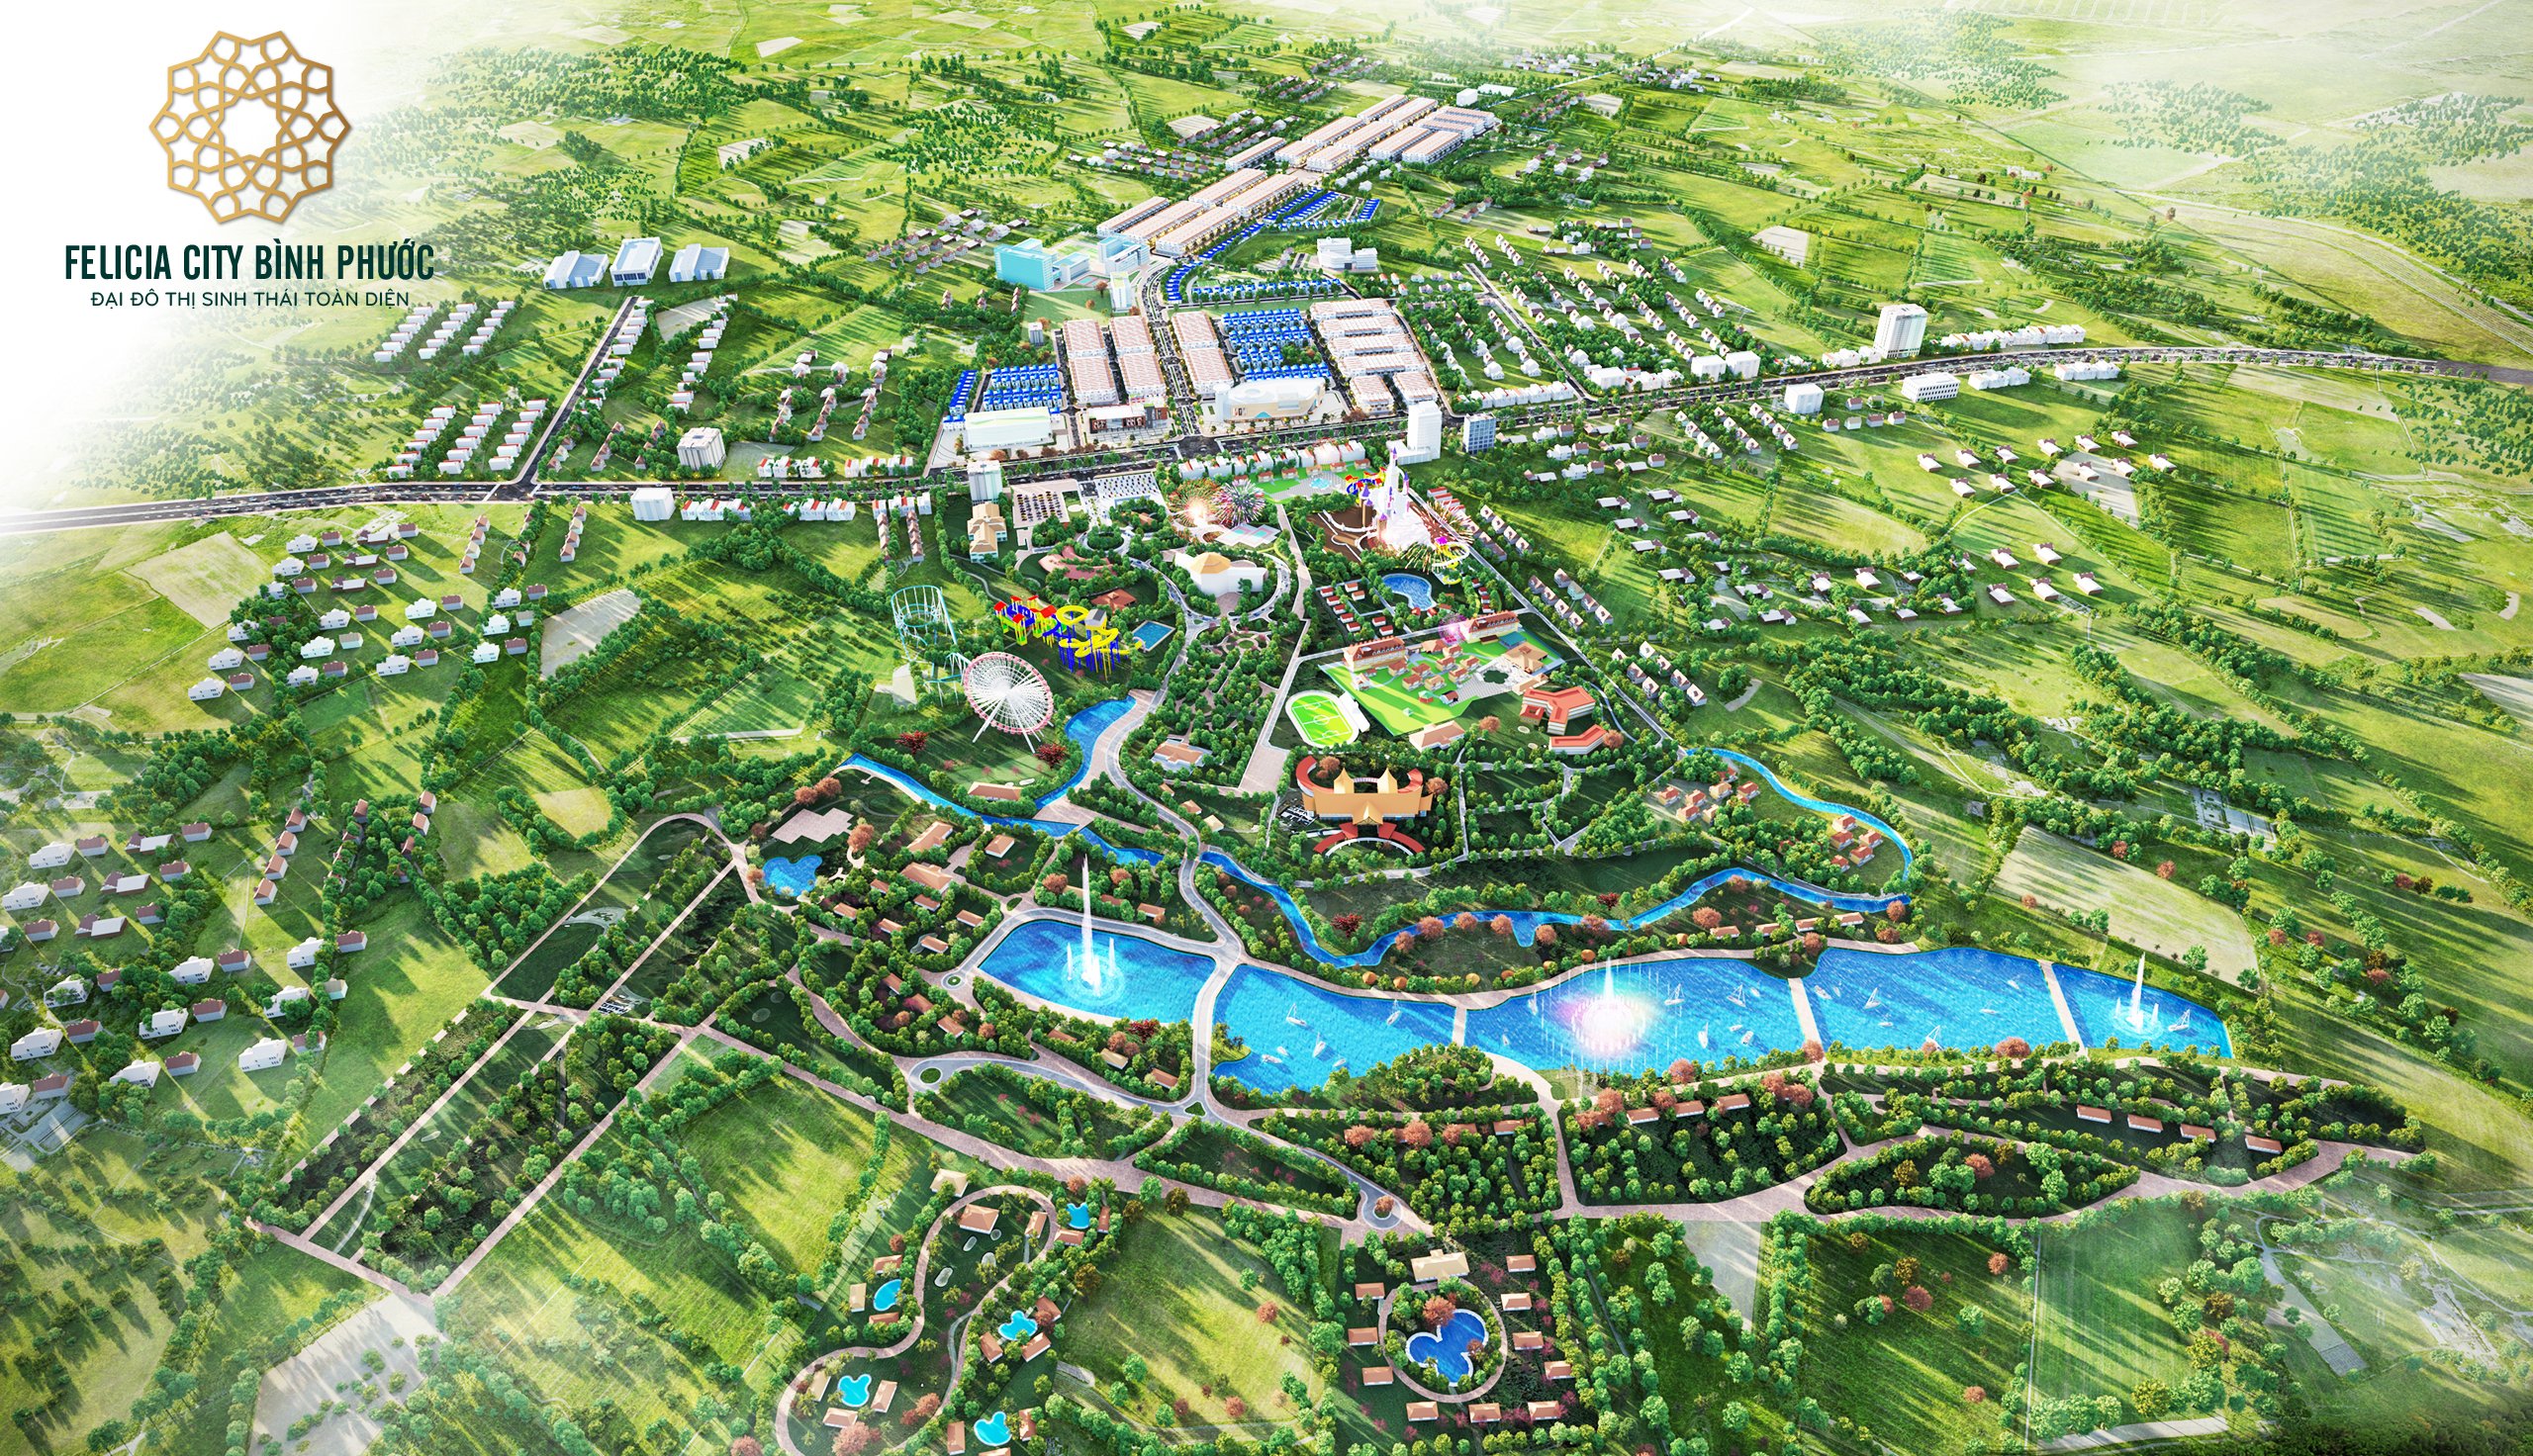 Siêu dự án đất nền Felicia City Bình Phước